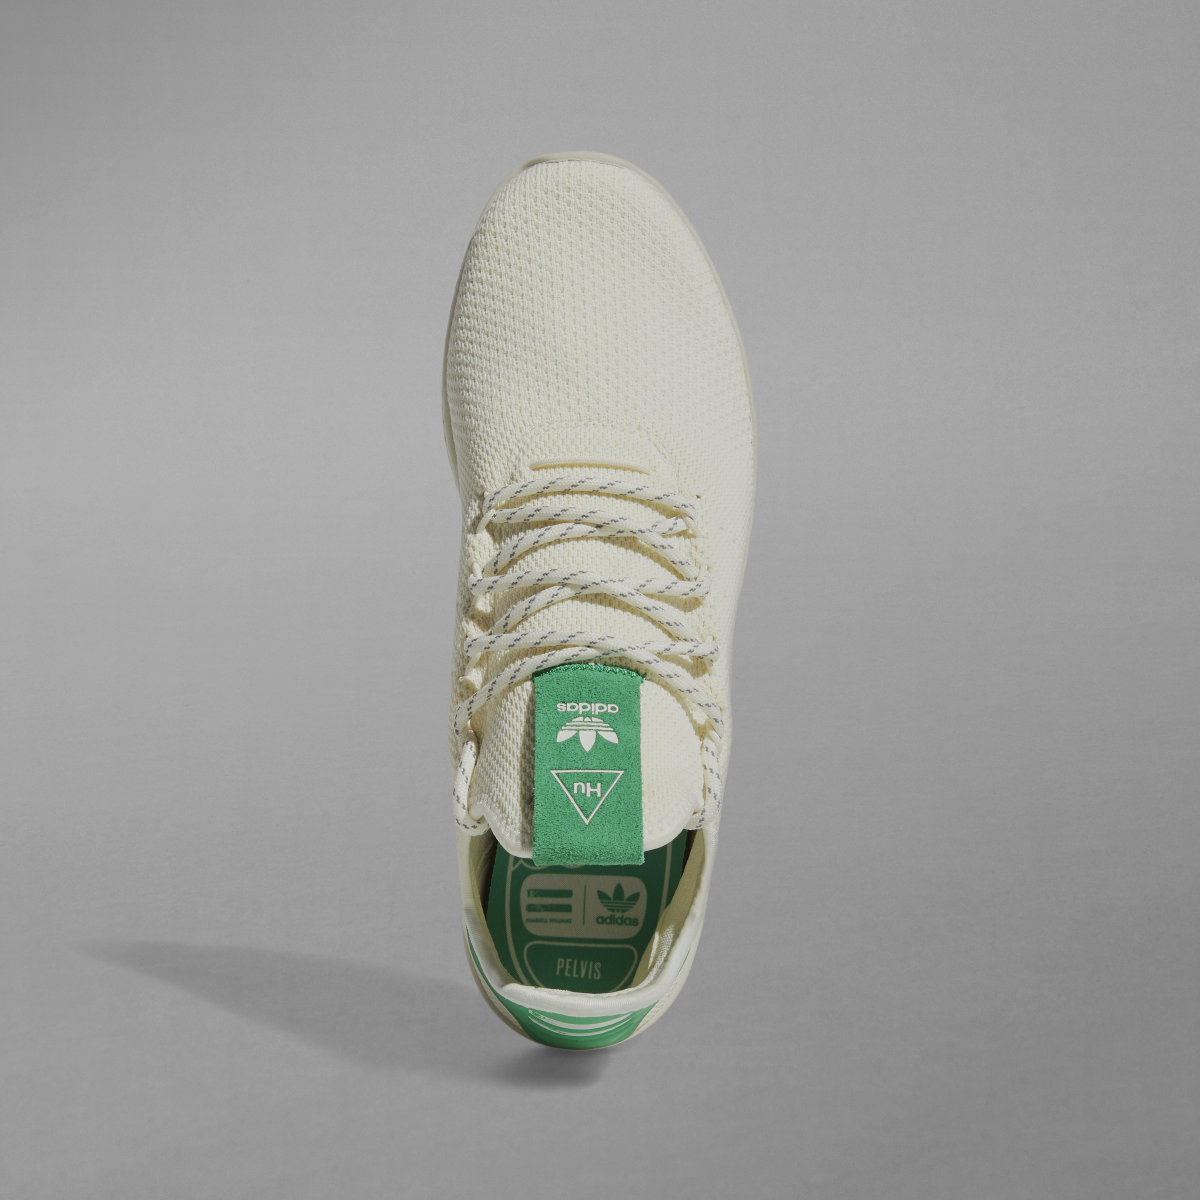 Adidas Tennis Hu Shoes. 4